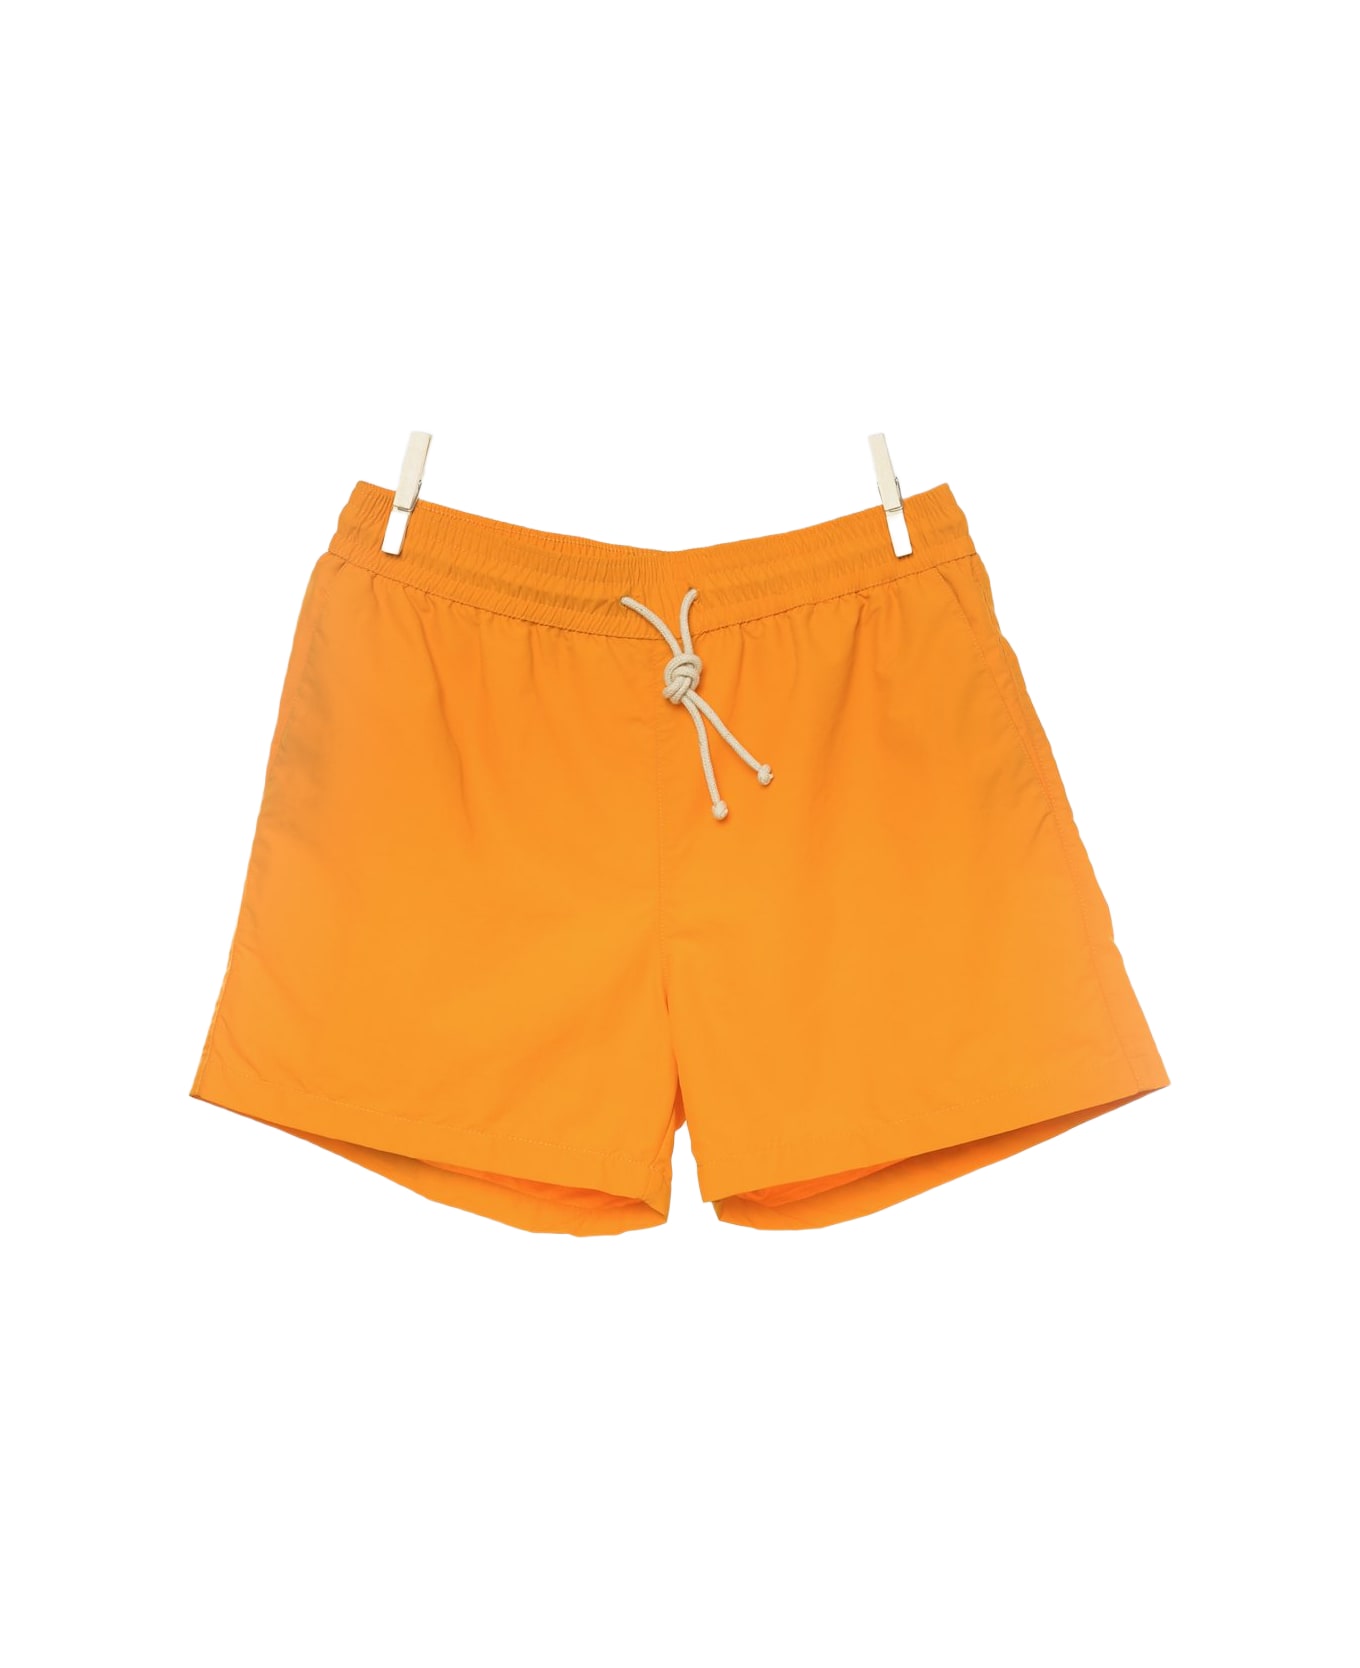 Ripa Ripa Giallo Zafferano Swim Shorts - Yellow